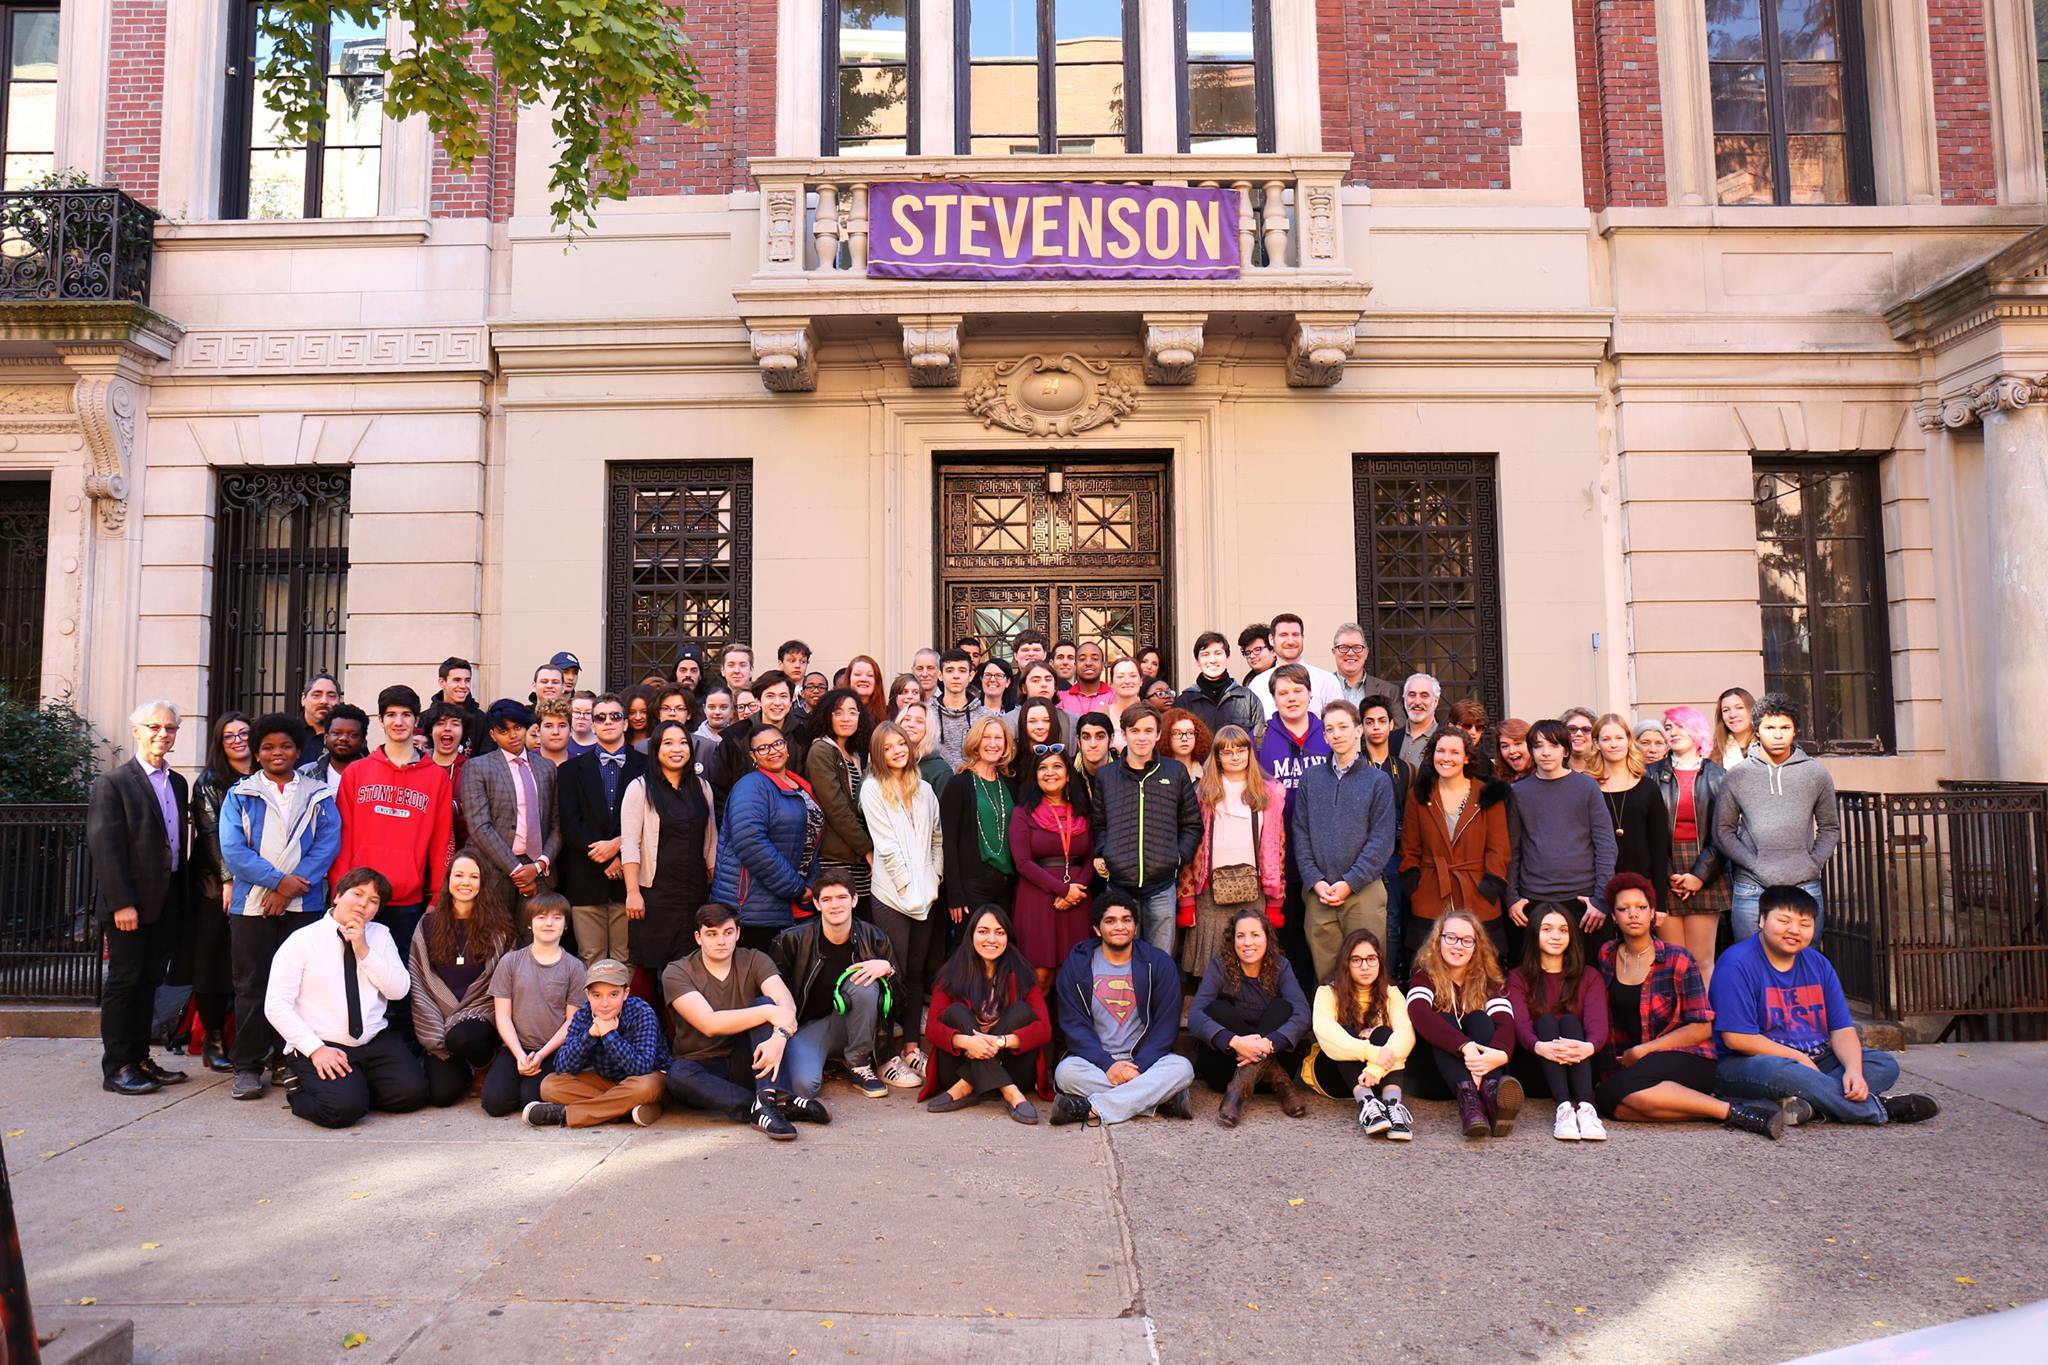 Robert Louis Stevenson School [West Side]